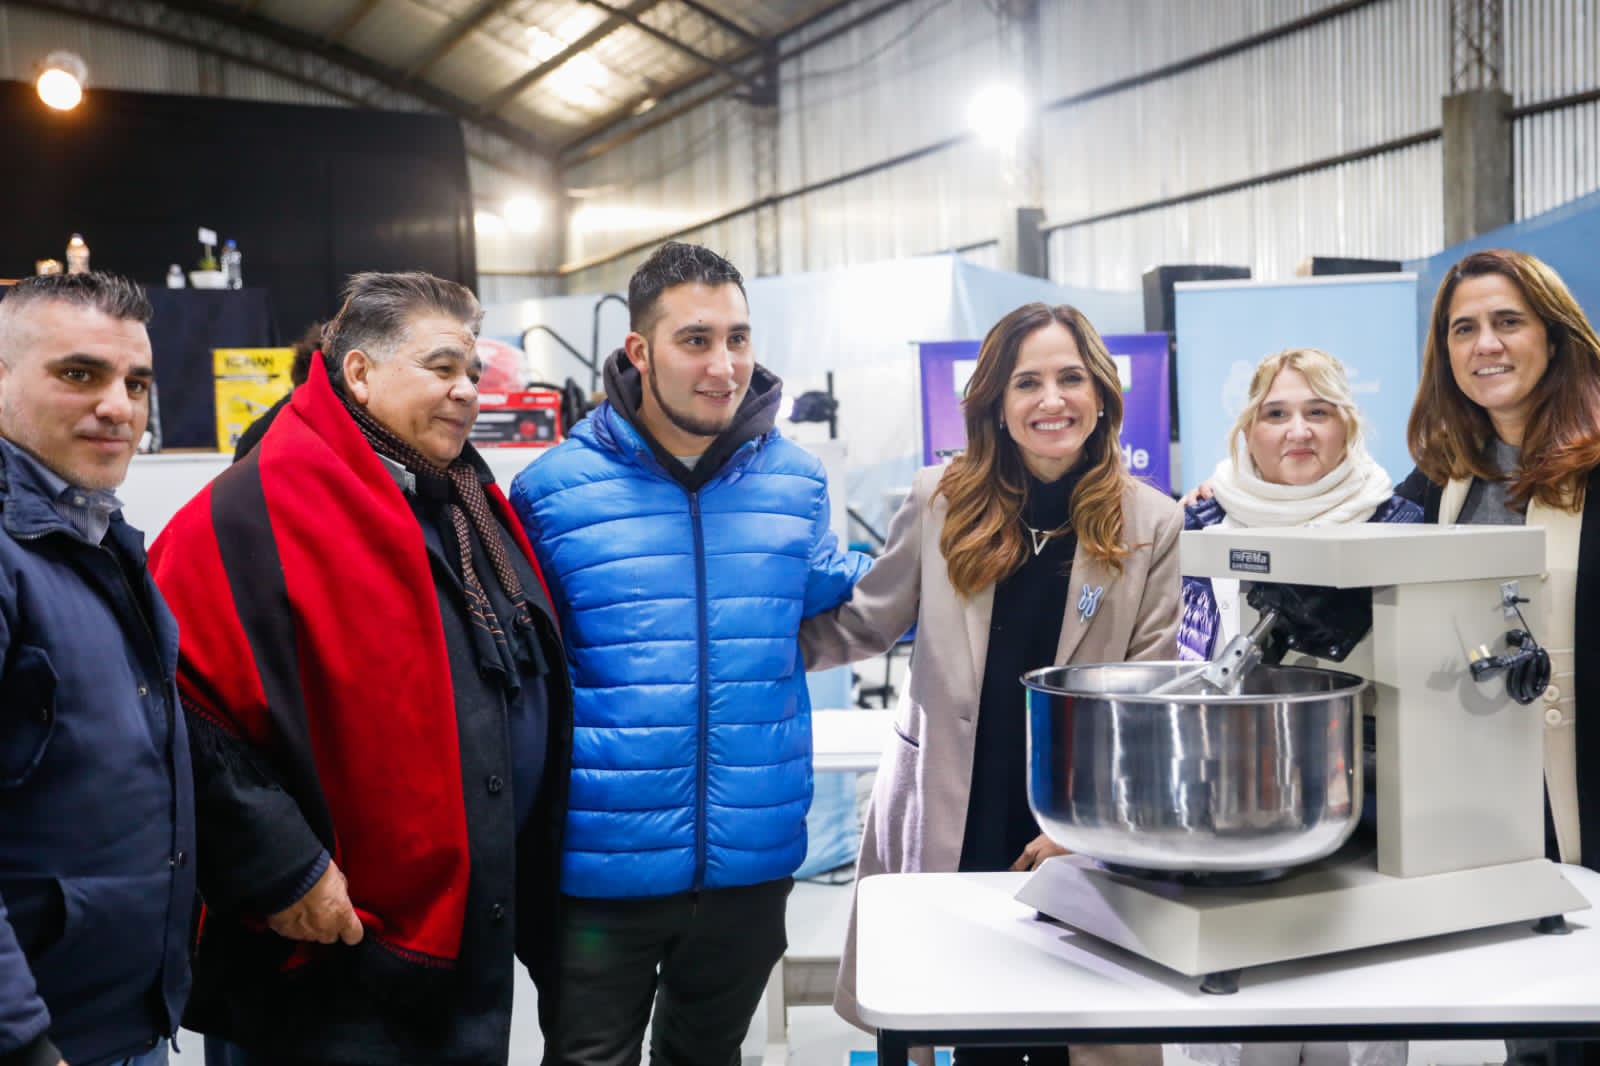 La ministra Victoria Tolosa Paz junto al intendente Mario Ishii y la directora Natalia Mainoldi entregando máquinas a titulares del programa Talleres Familiares.